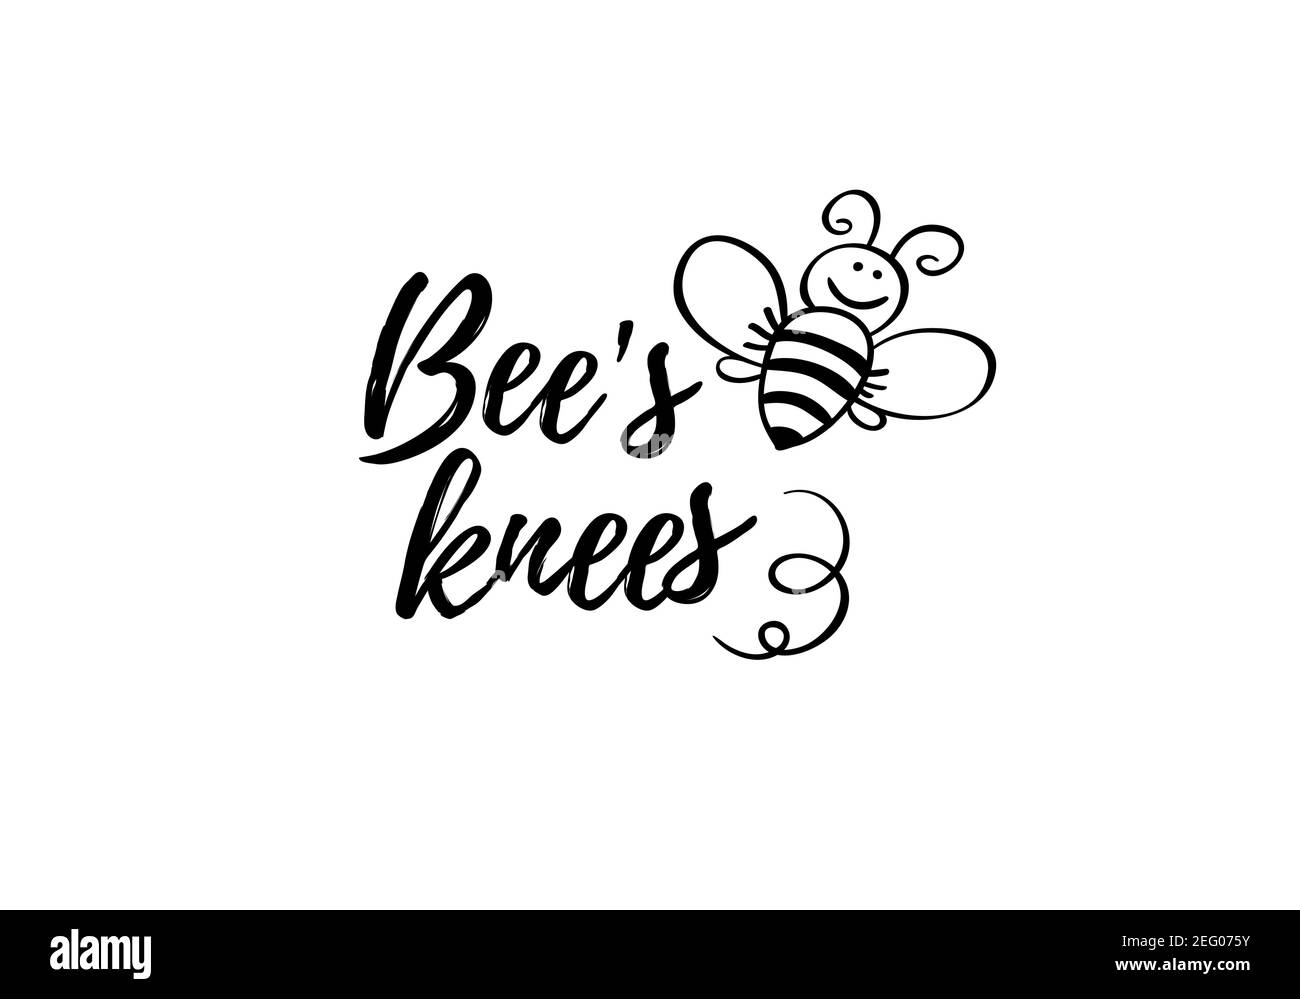 Bienen Knie Phrase mit Doodle Biene auf weißem Hintergrund. Lettering Poster, Karten-Design oder T-Shirt, Textildruck. Inspirierende Motivation Zitat Plakat. Stock Vektor